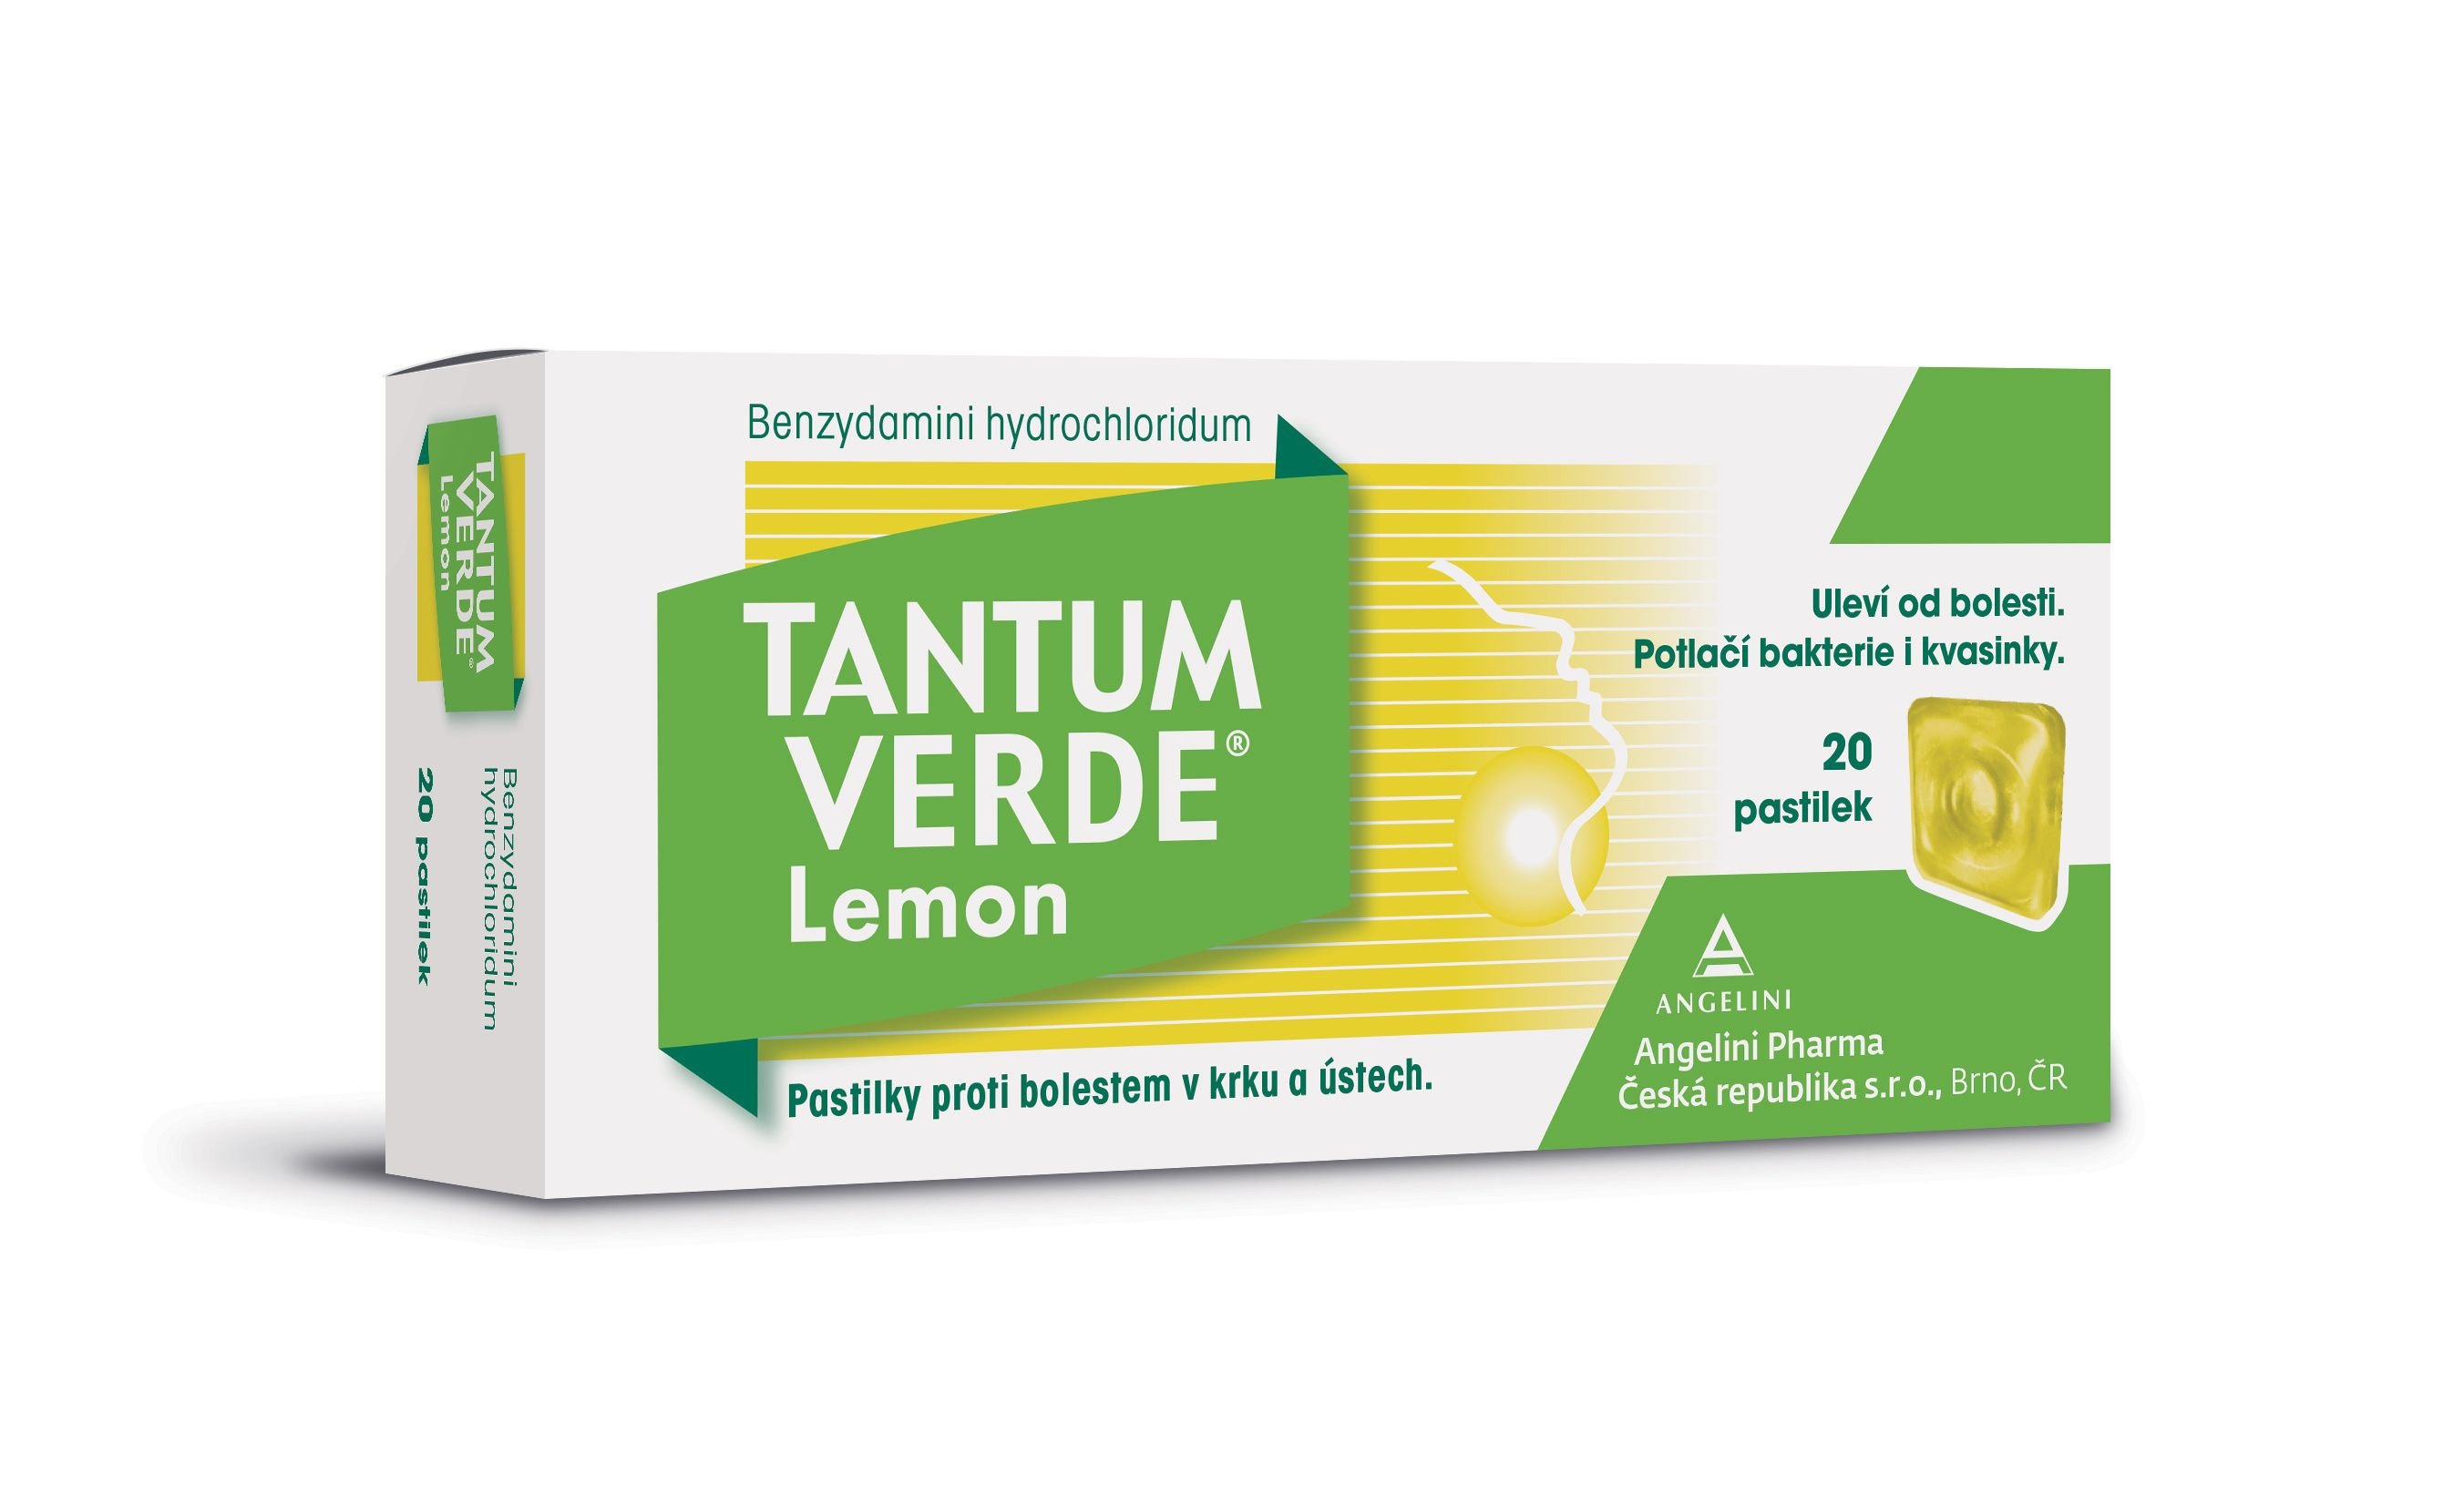 Tantum verde Lemon 3 mg 20 pastilek Tantum verde